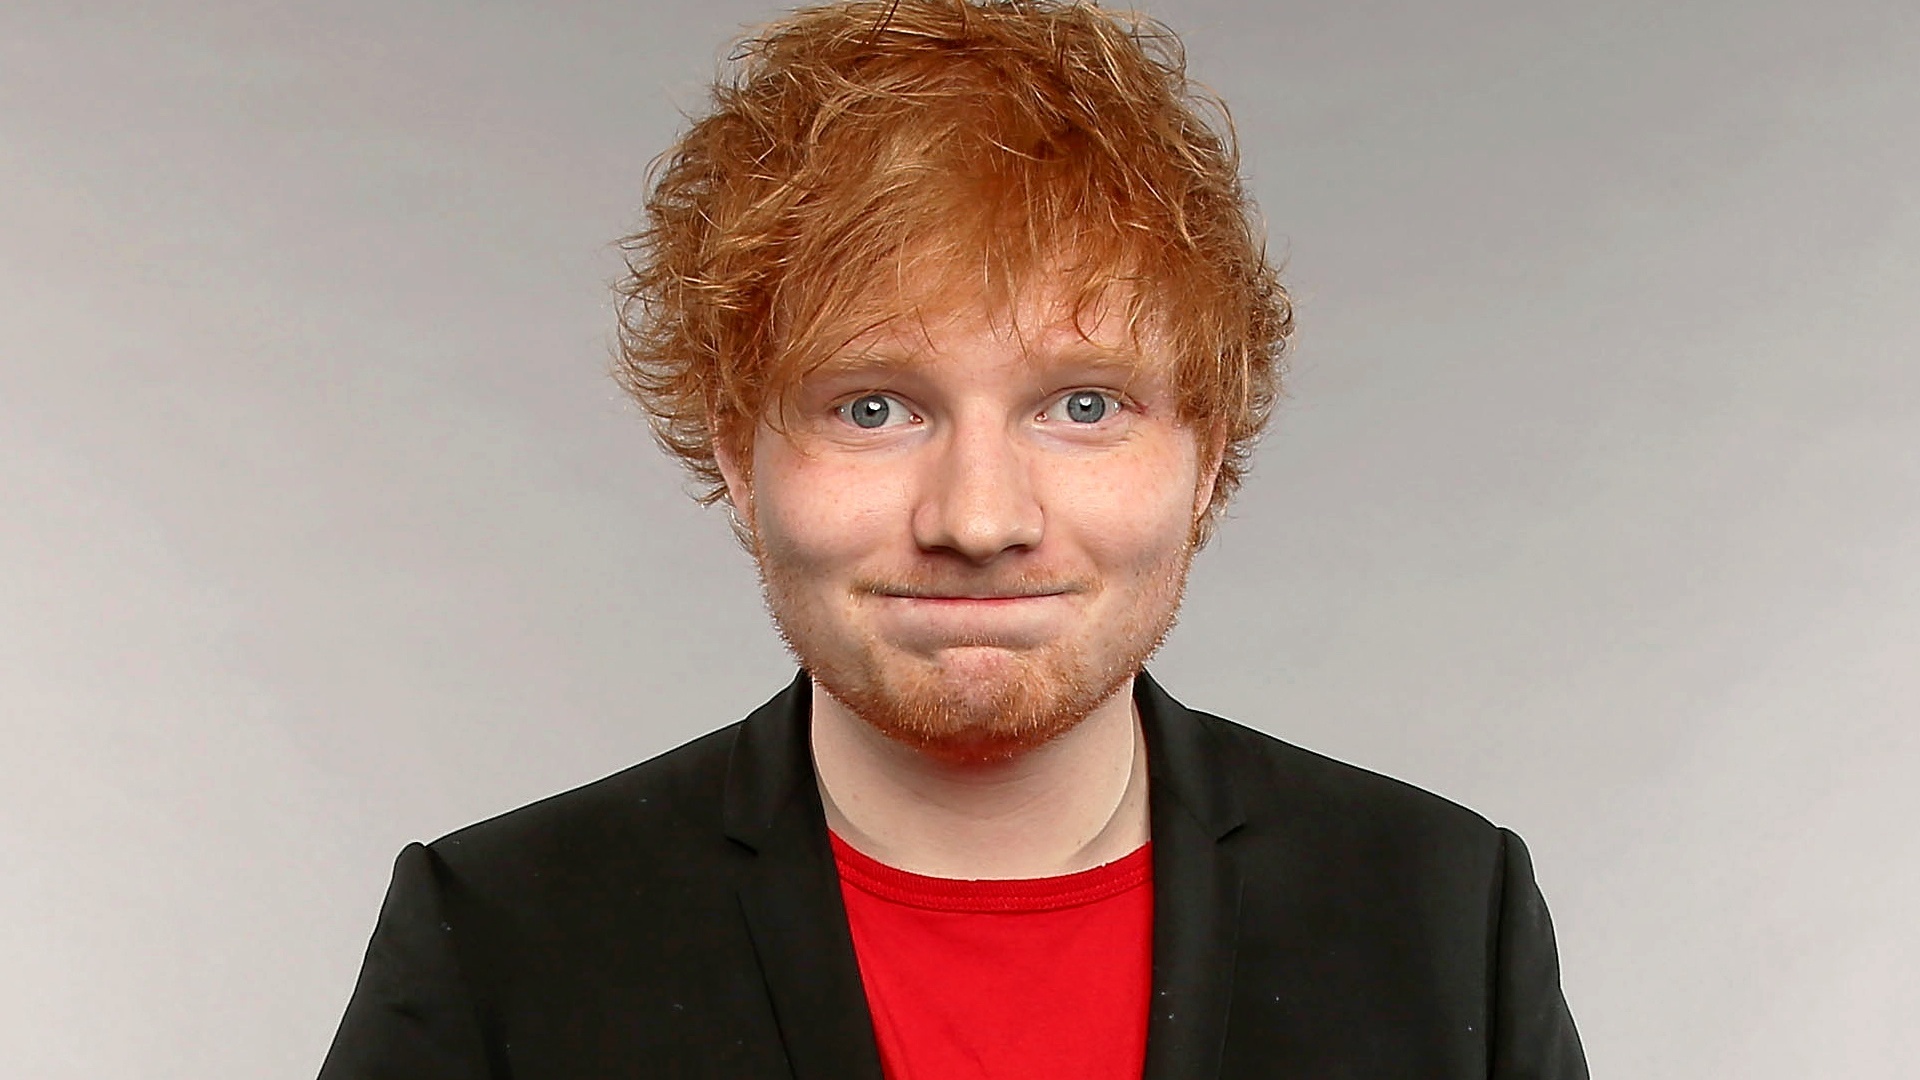 Ed Sheeran conmemora el décimo aniversario de "X" con un concierto en Nueva York